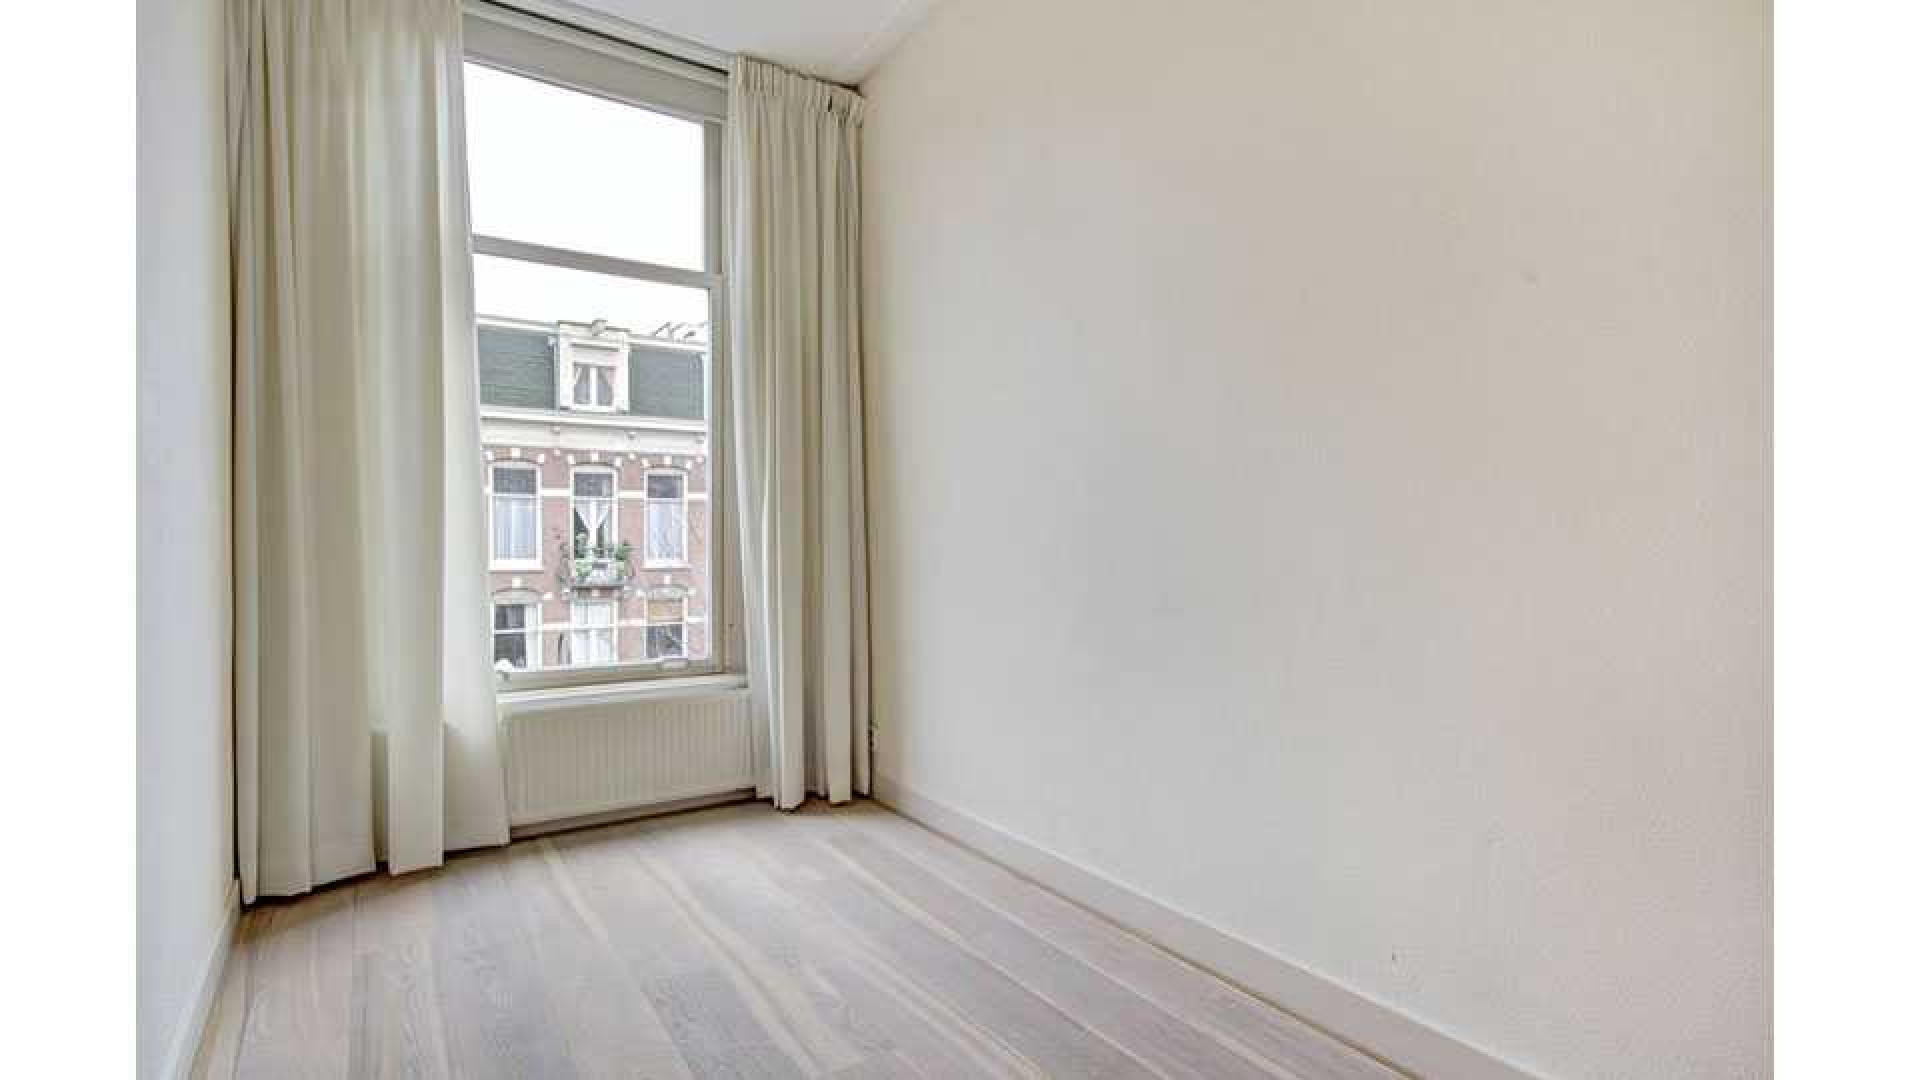 Daphne Deckers en Richard Krajicek zetten hun appartement te huur. Zie foto's 8